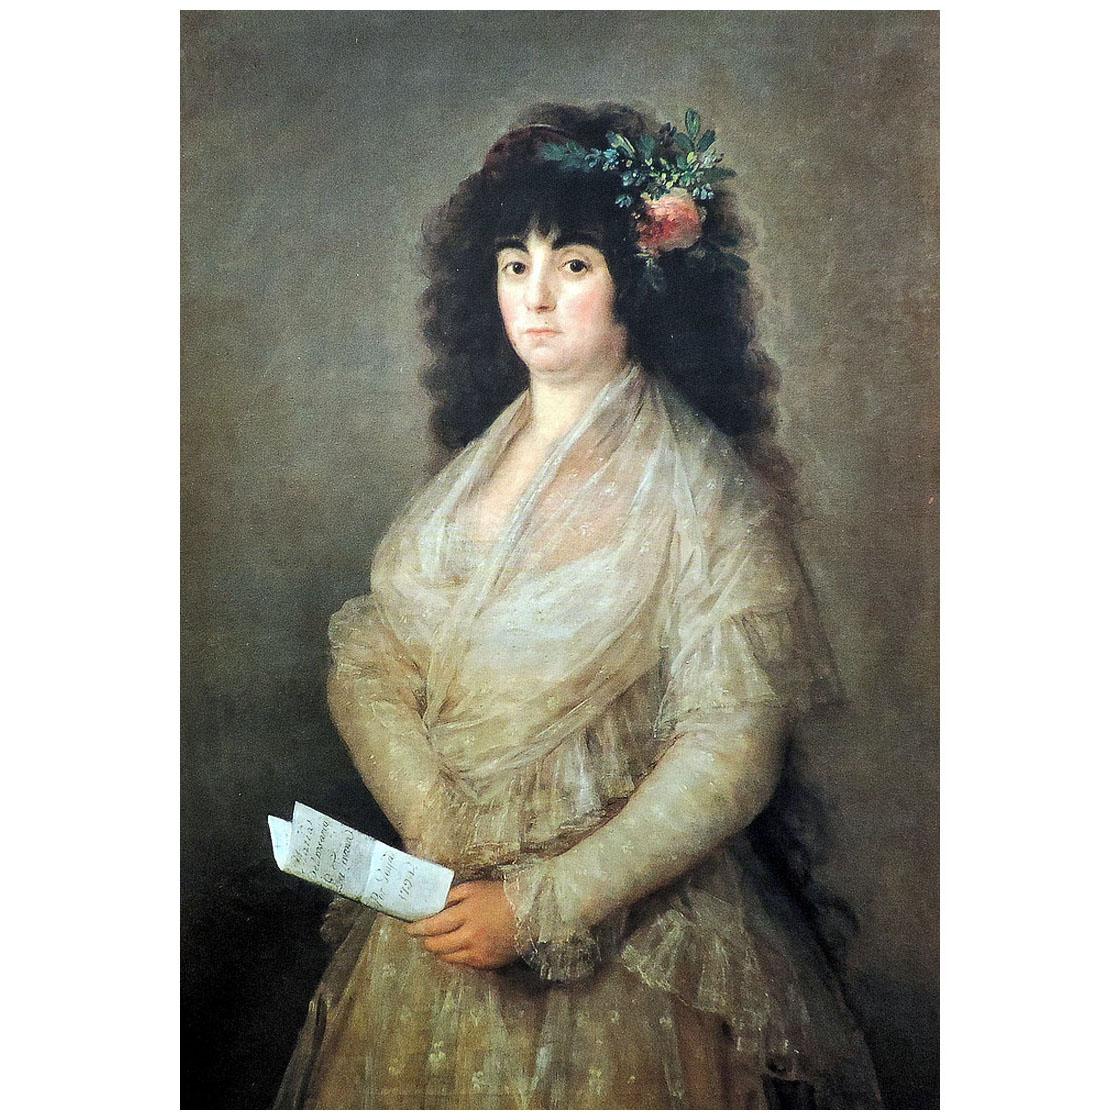 Francisco de Goya. La Tirana. 1794. Private collection